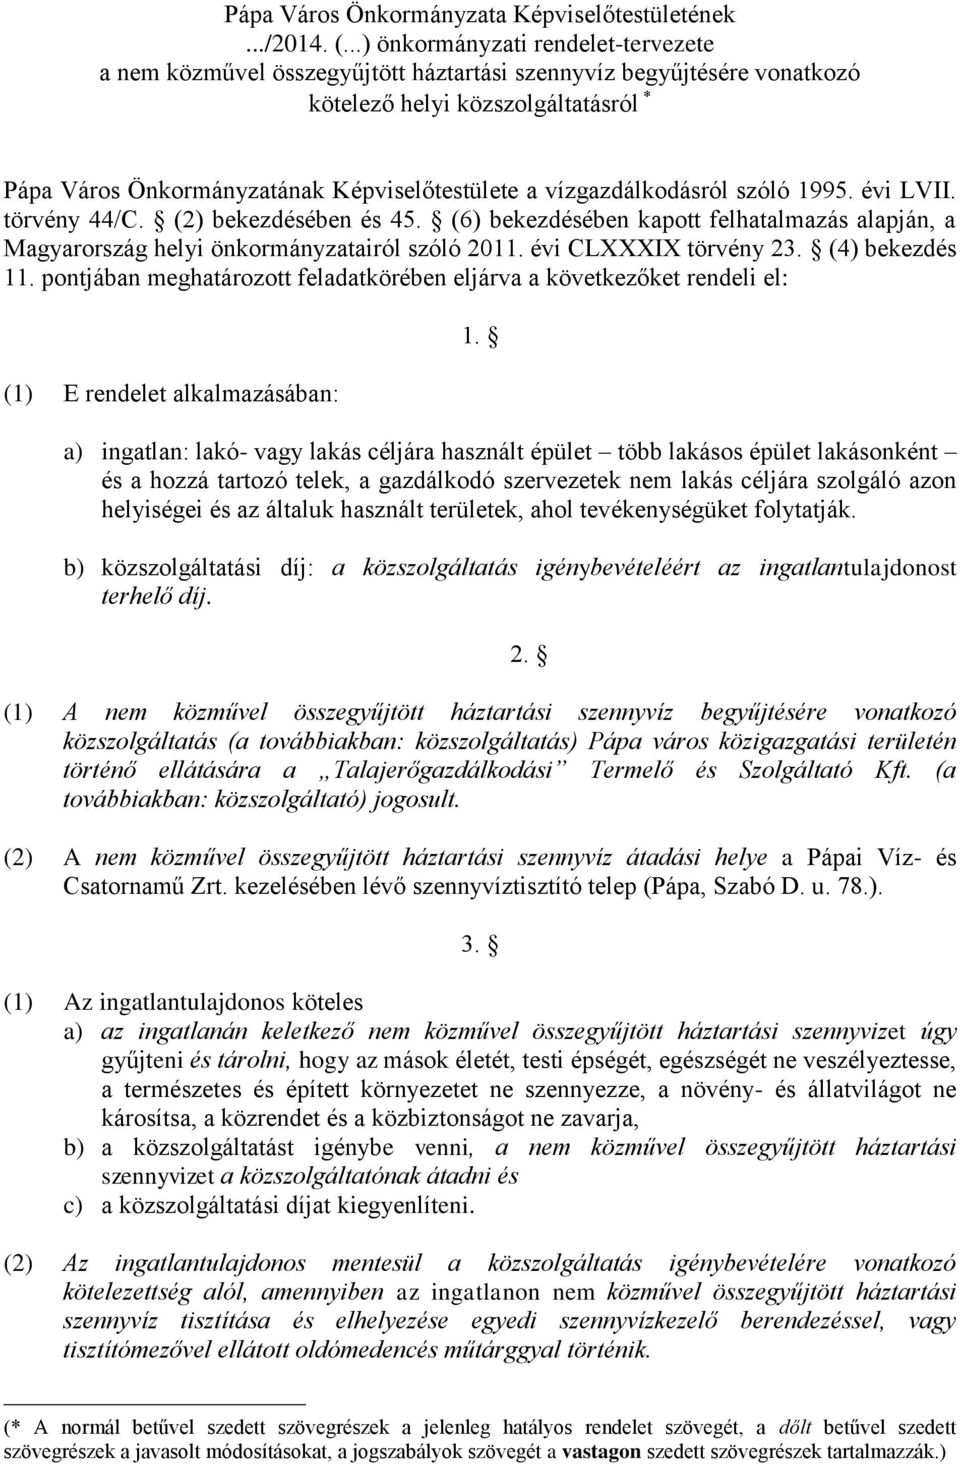 vízgazdálkodásról szóló 1995. évi LVII. törvény 44/C. (2) bekezdésében és 45. (6) bekezdésében kapott felhatalmazás alapján, a Magyarország helyi önkormányzatairól szóló 2011. évi CLXXXIX törvény 23.